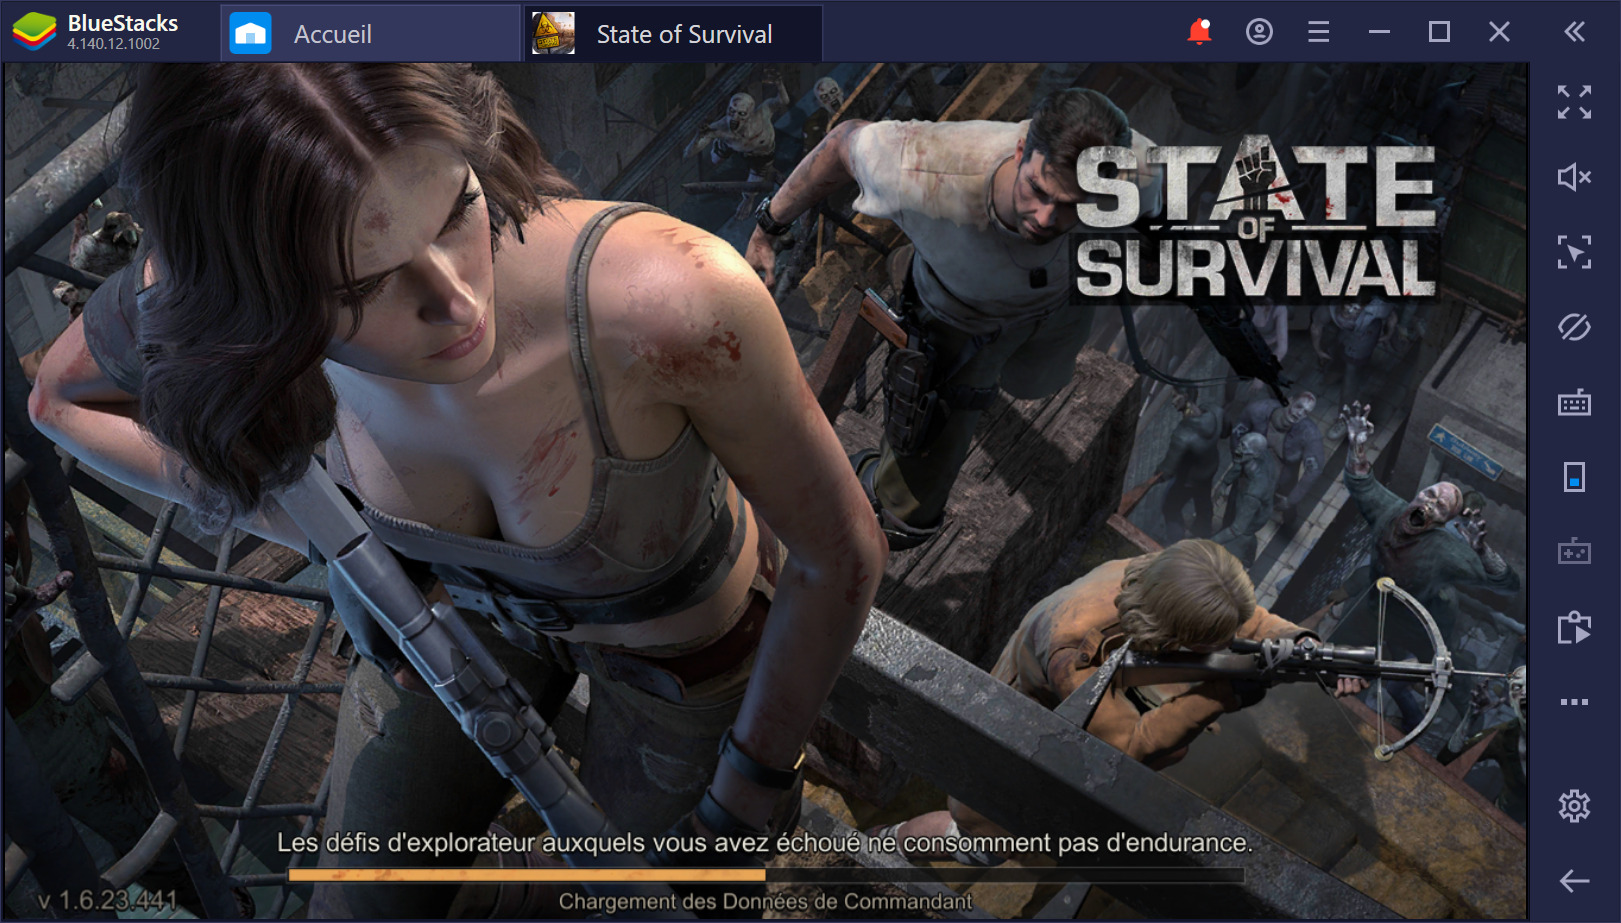 State of Survival sur PC : Utiliser BlueStacks pour gagner dans ce jeu de zombies